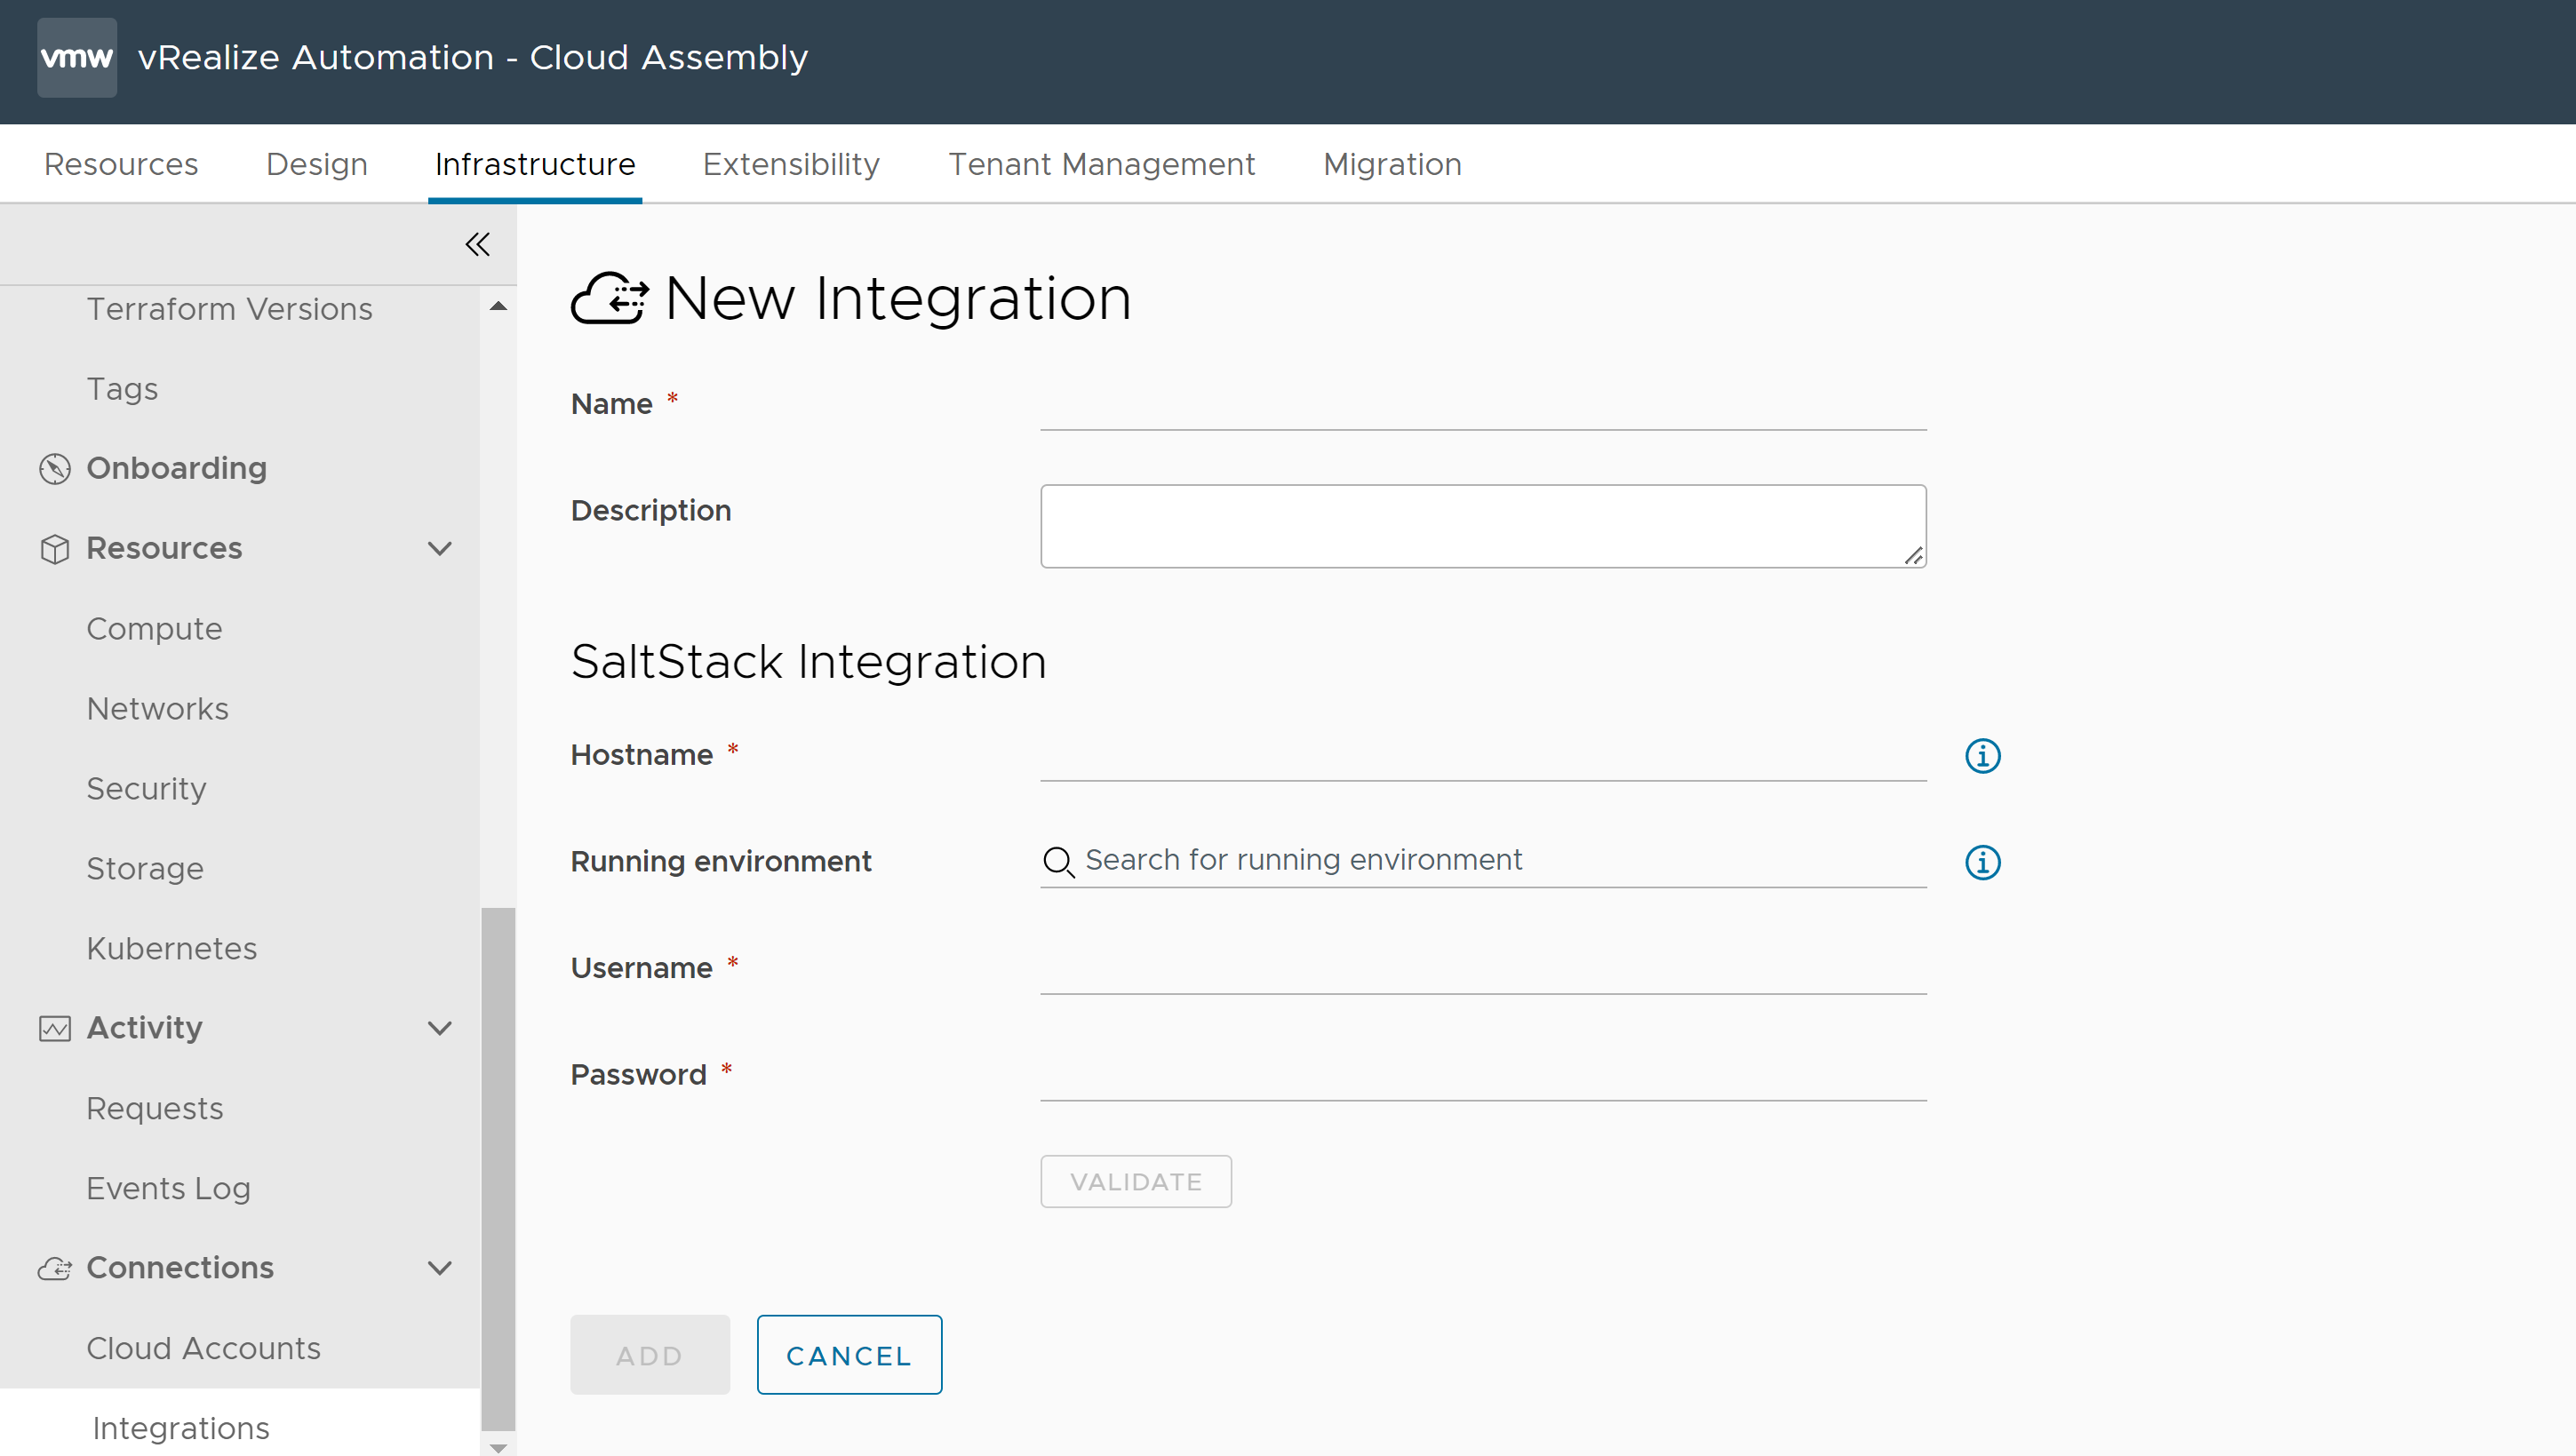 Formulario para crear una nueva integración en Cloud Assembly